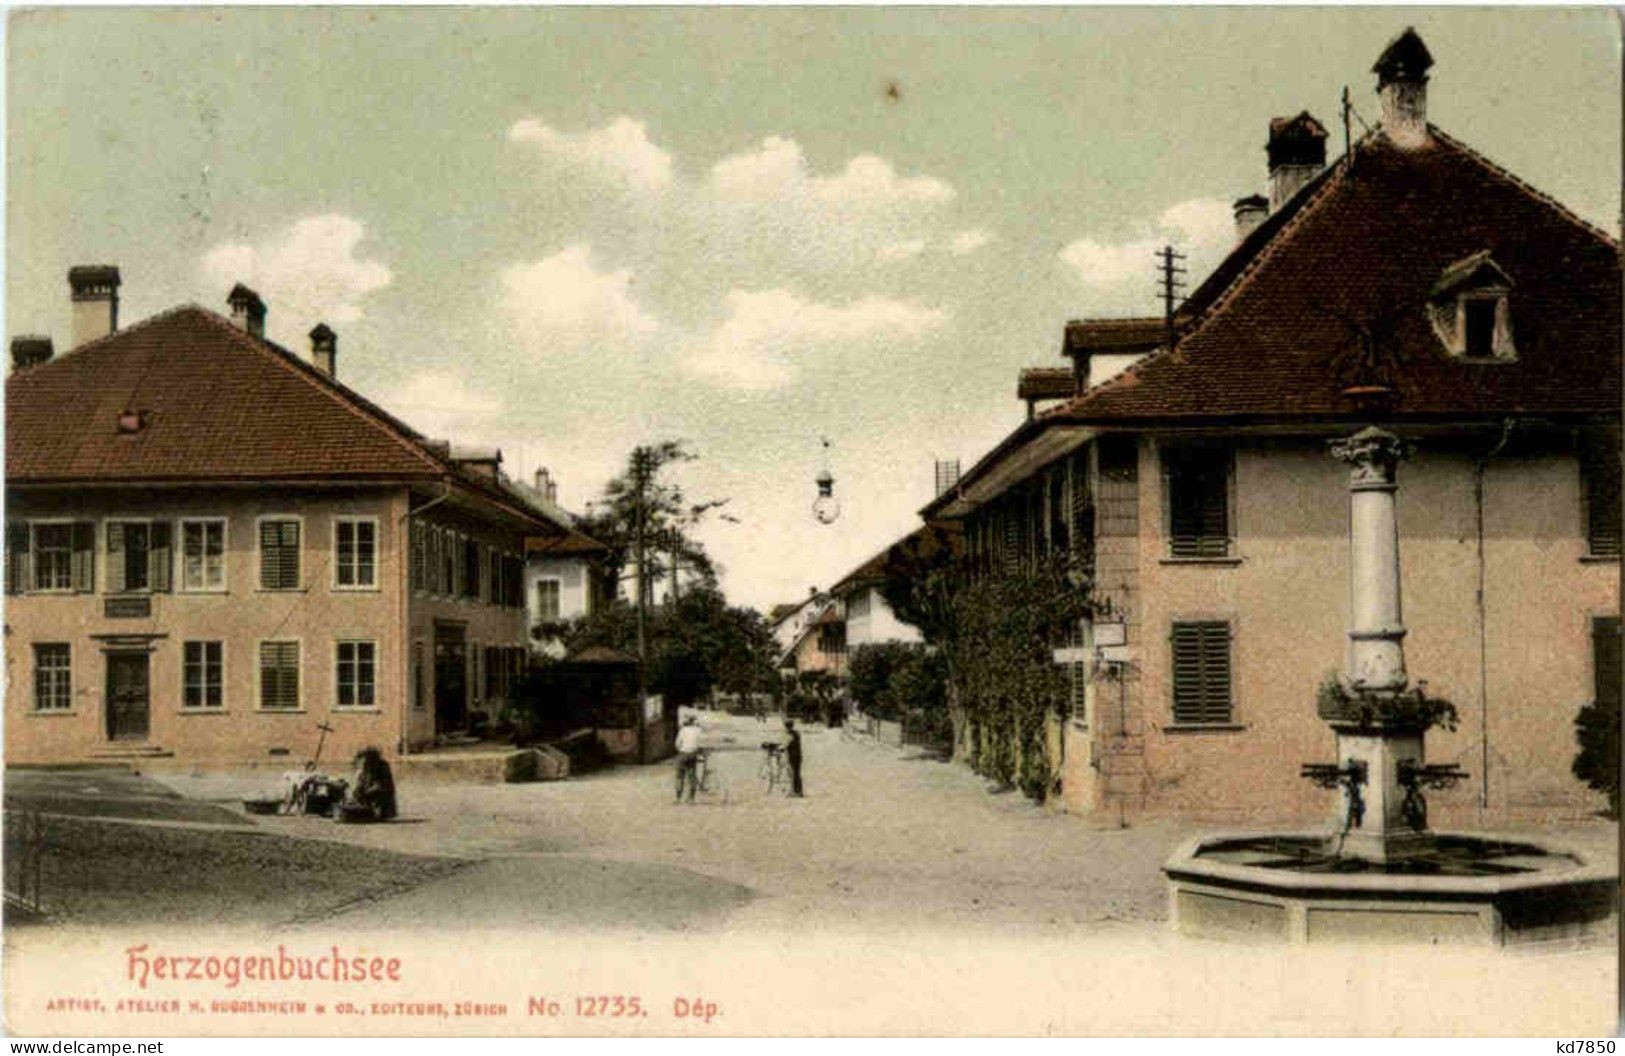 Herzogenbuchsee - Herzogenbuchsee